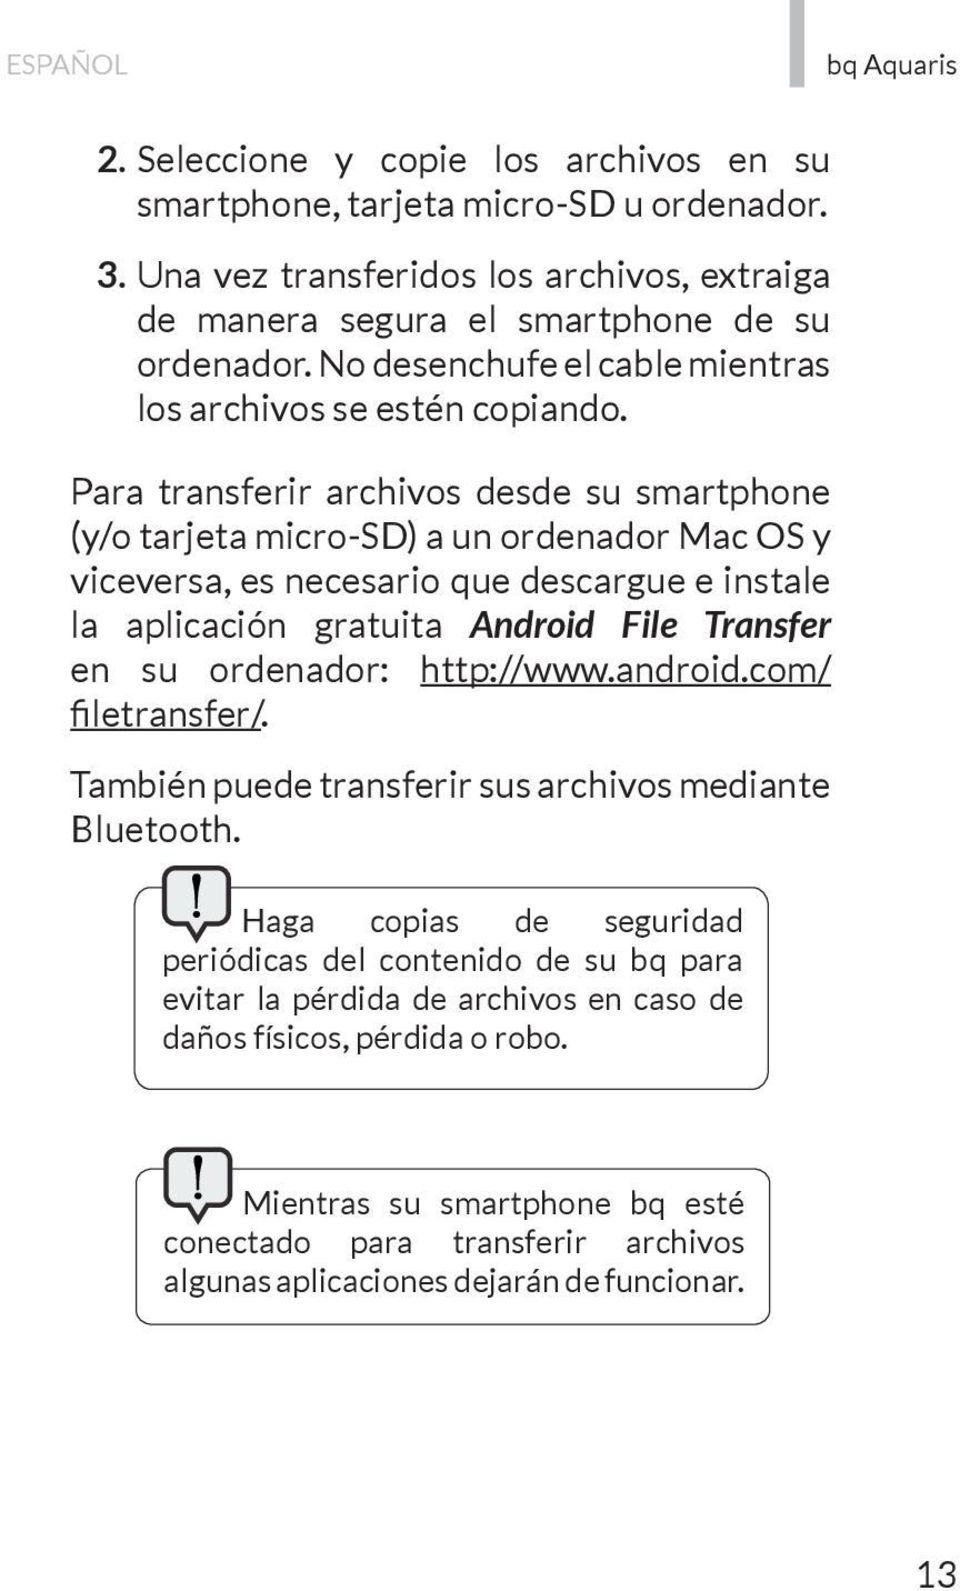 Para transferir archivos desde su smartphone (y/o tarjeta micro-sd) a un ordenador Mac OS y viceversa, es necesario que descargue e instale la aplicación gratuita Android File Transfer en su